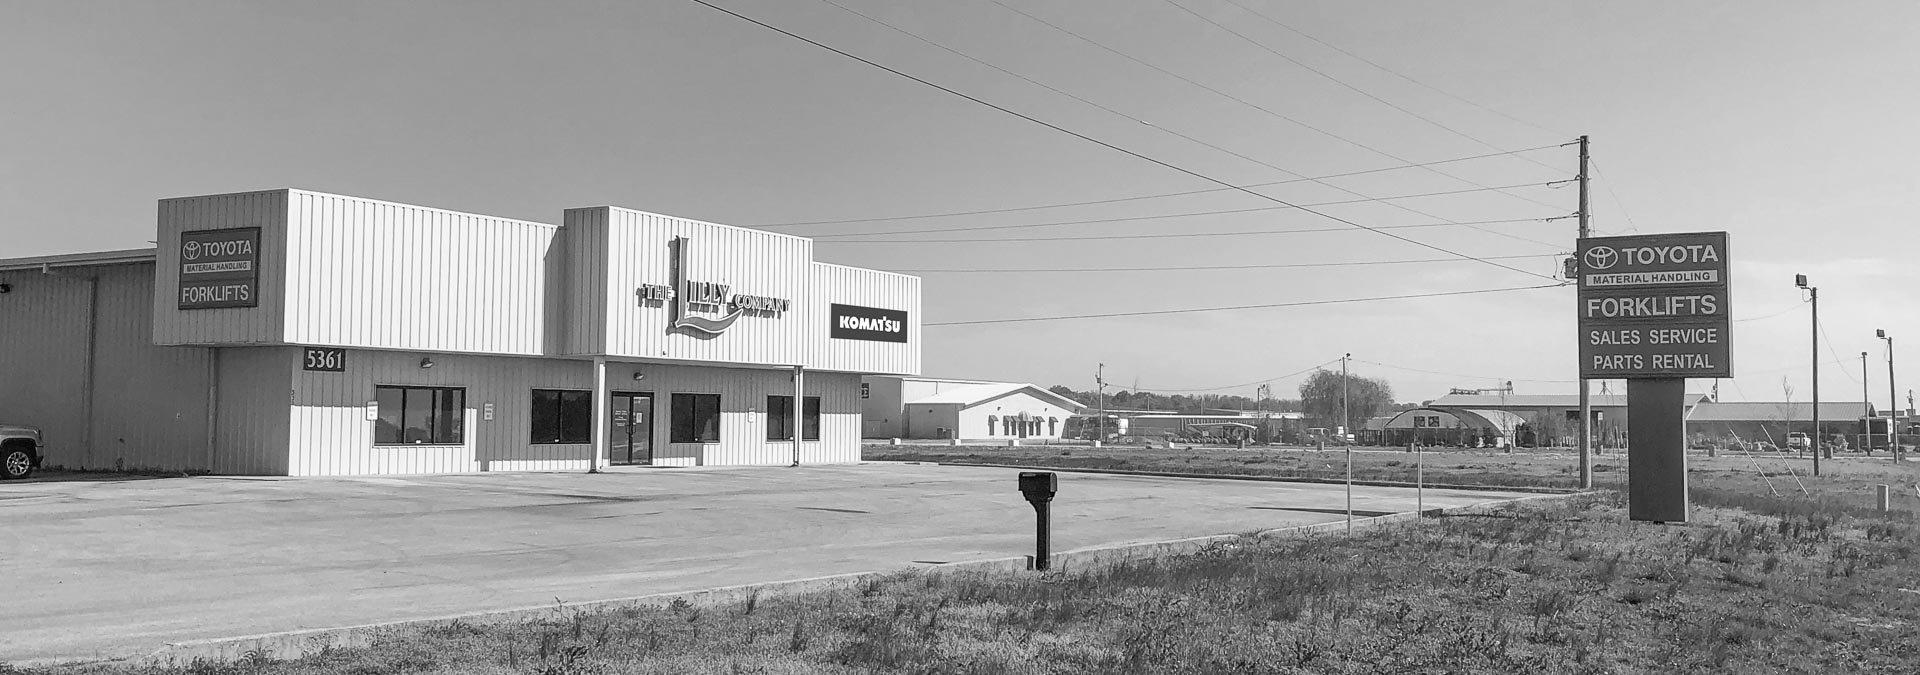 The Lilly Company, Jonesboro Arkansas